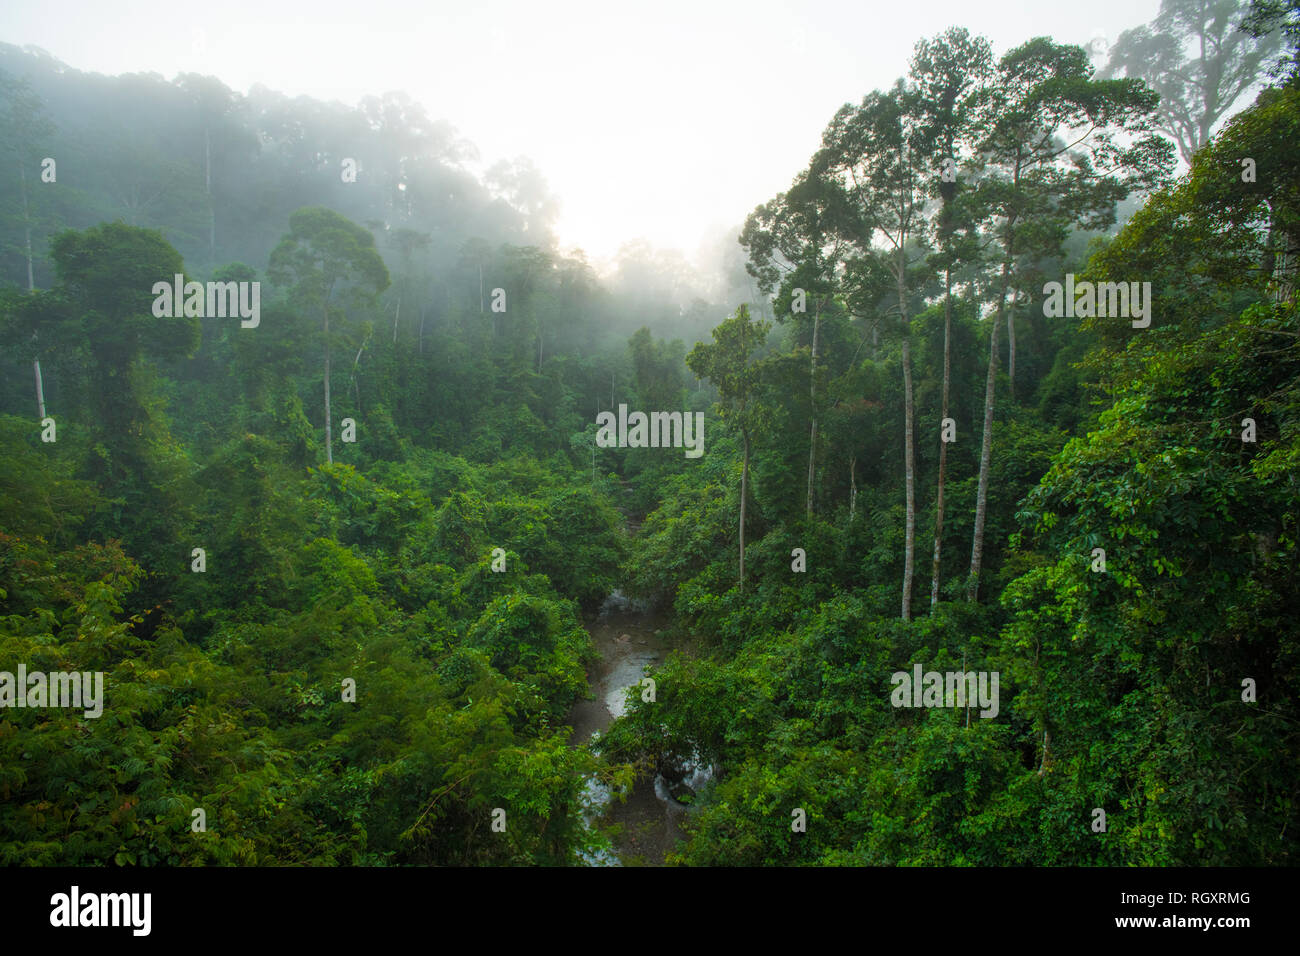 La foresta pluviale di Misty all'alba si vede dalla cima di un passaggio pedonale a baldacchino nella foresta pluviale di Danum Valley, Sabah, Borneo, Malesia. Foto Stock